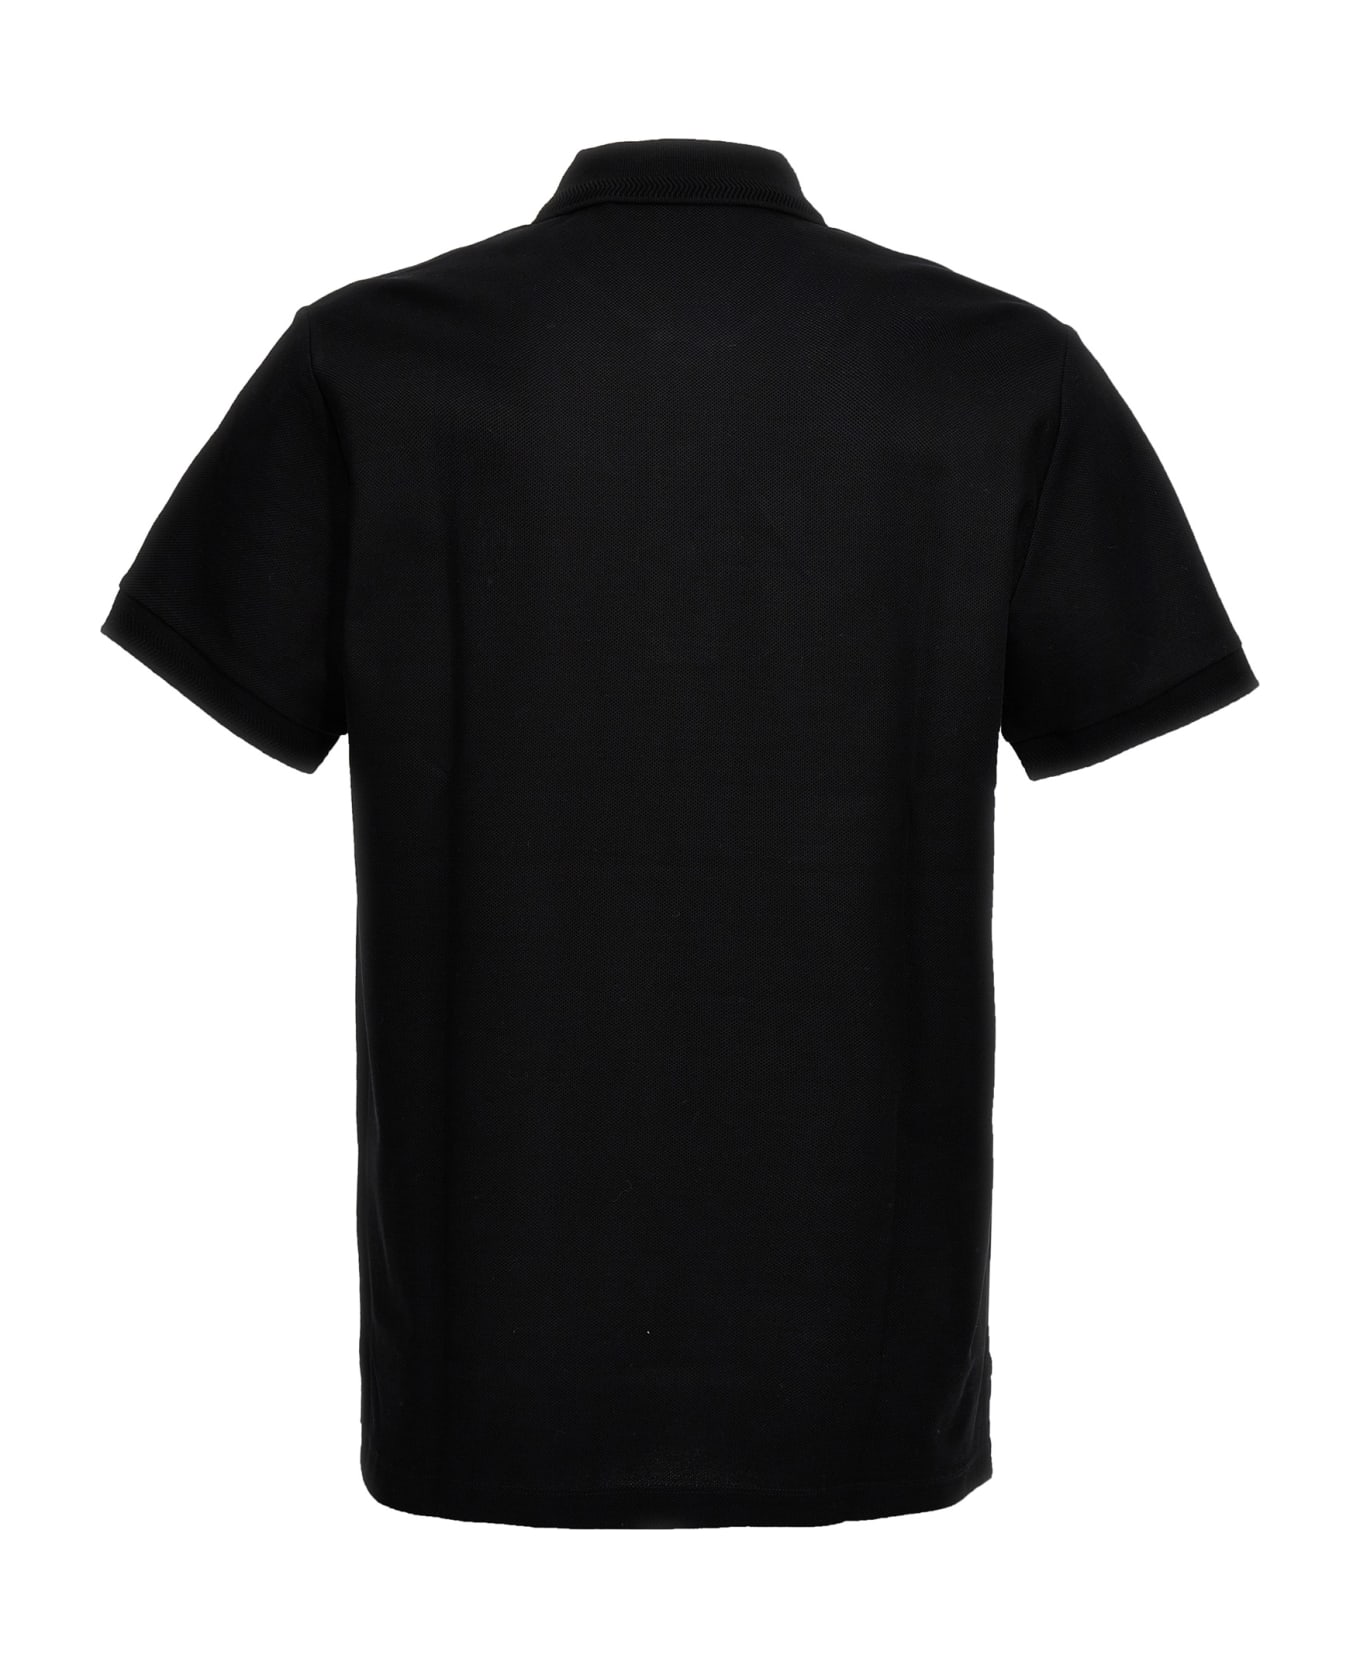 Burberry 'eddie' Polo Shirt - Black  